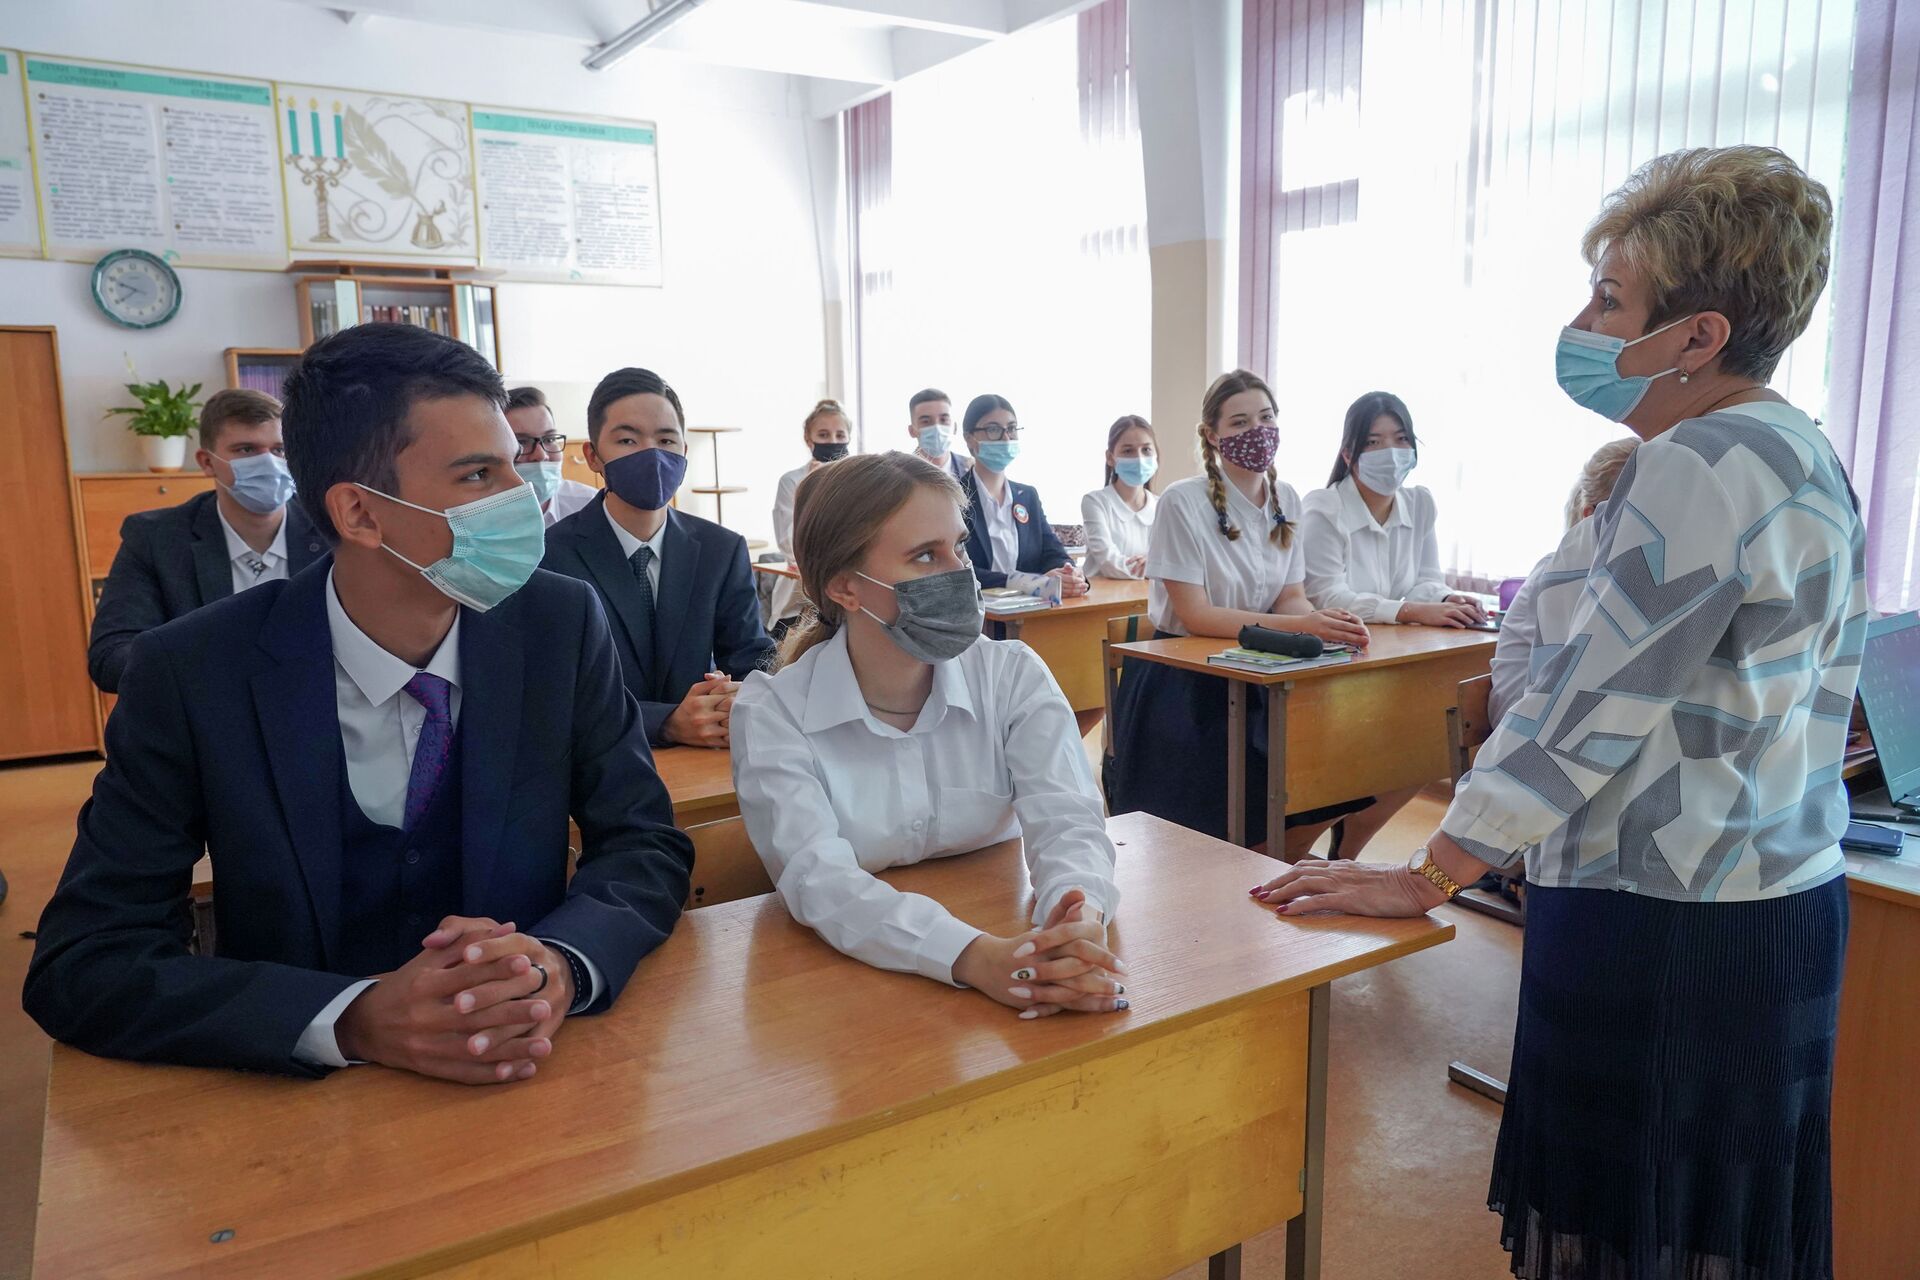 Учитель с микрофоном, дети в масках: как COVID изменил школьные будни - Sputnik Казахстан, 1920, 06.09.2021